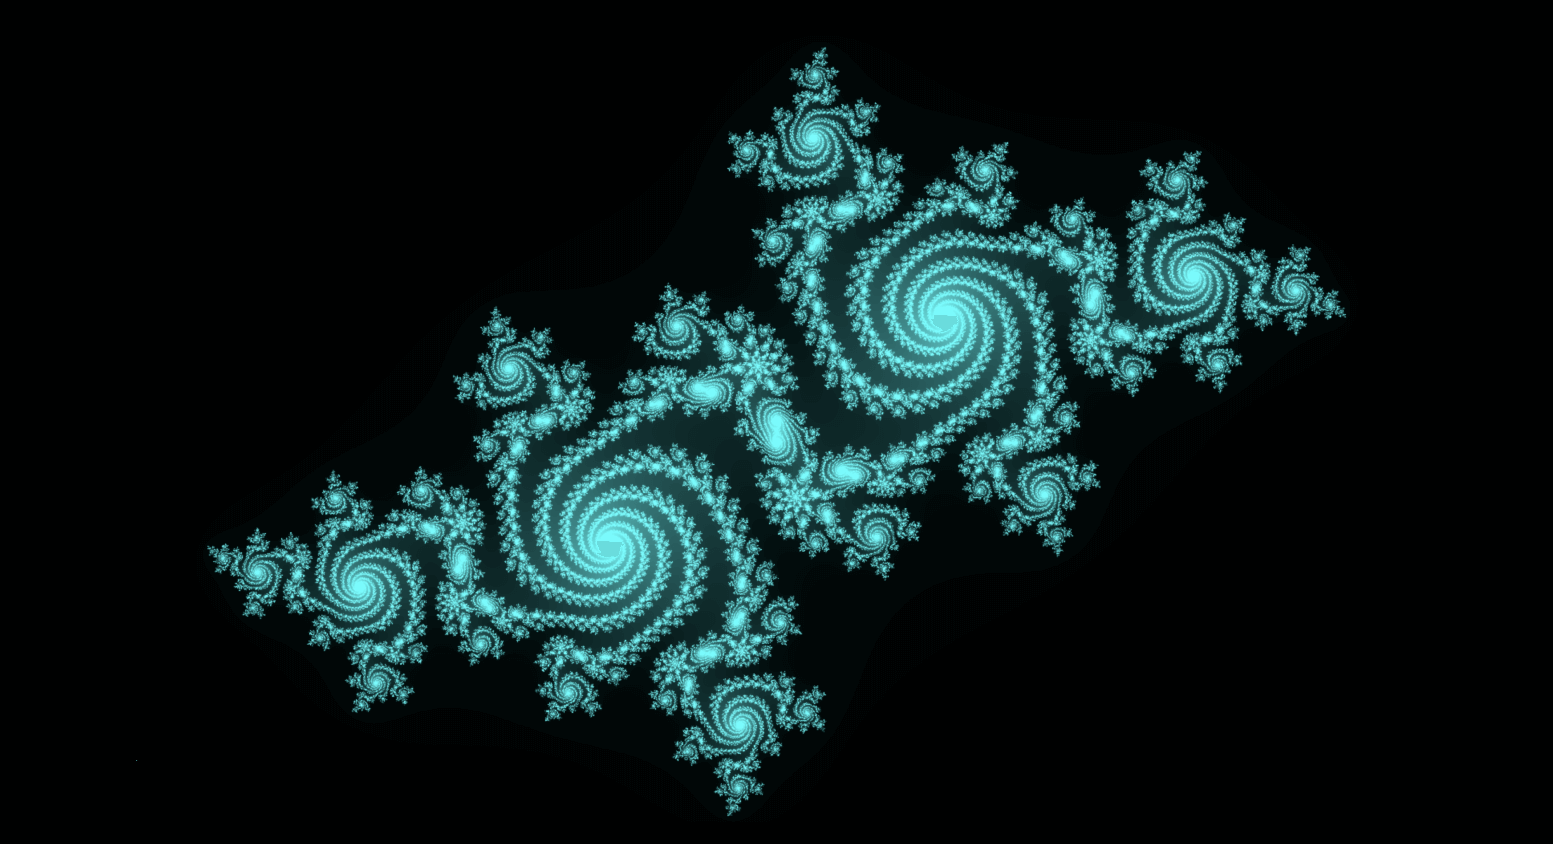 Visual representation of fractals.